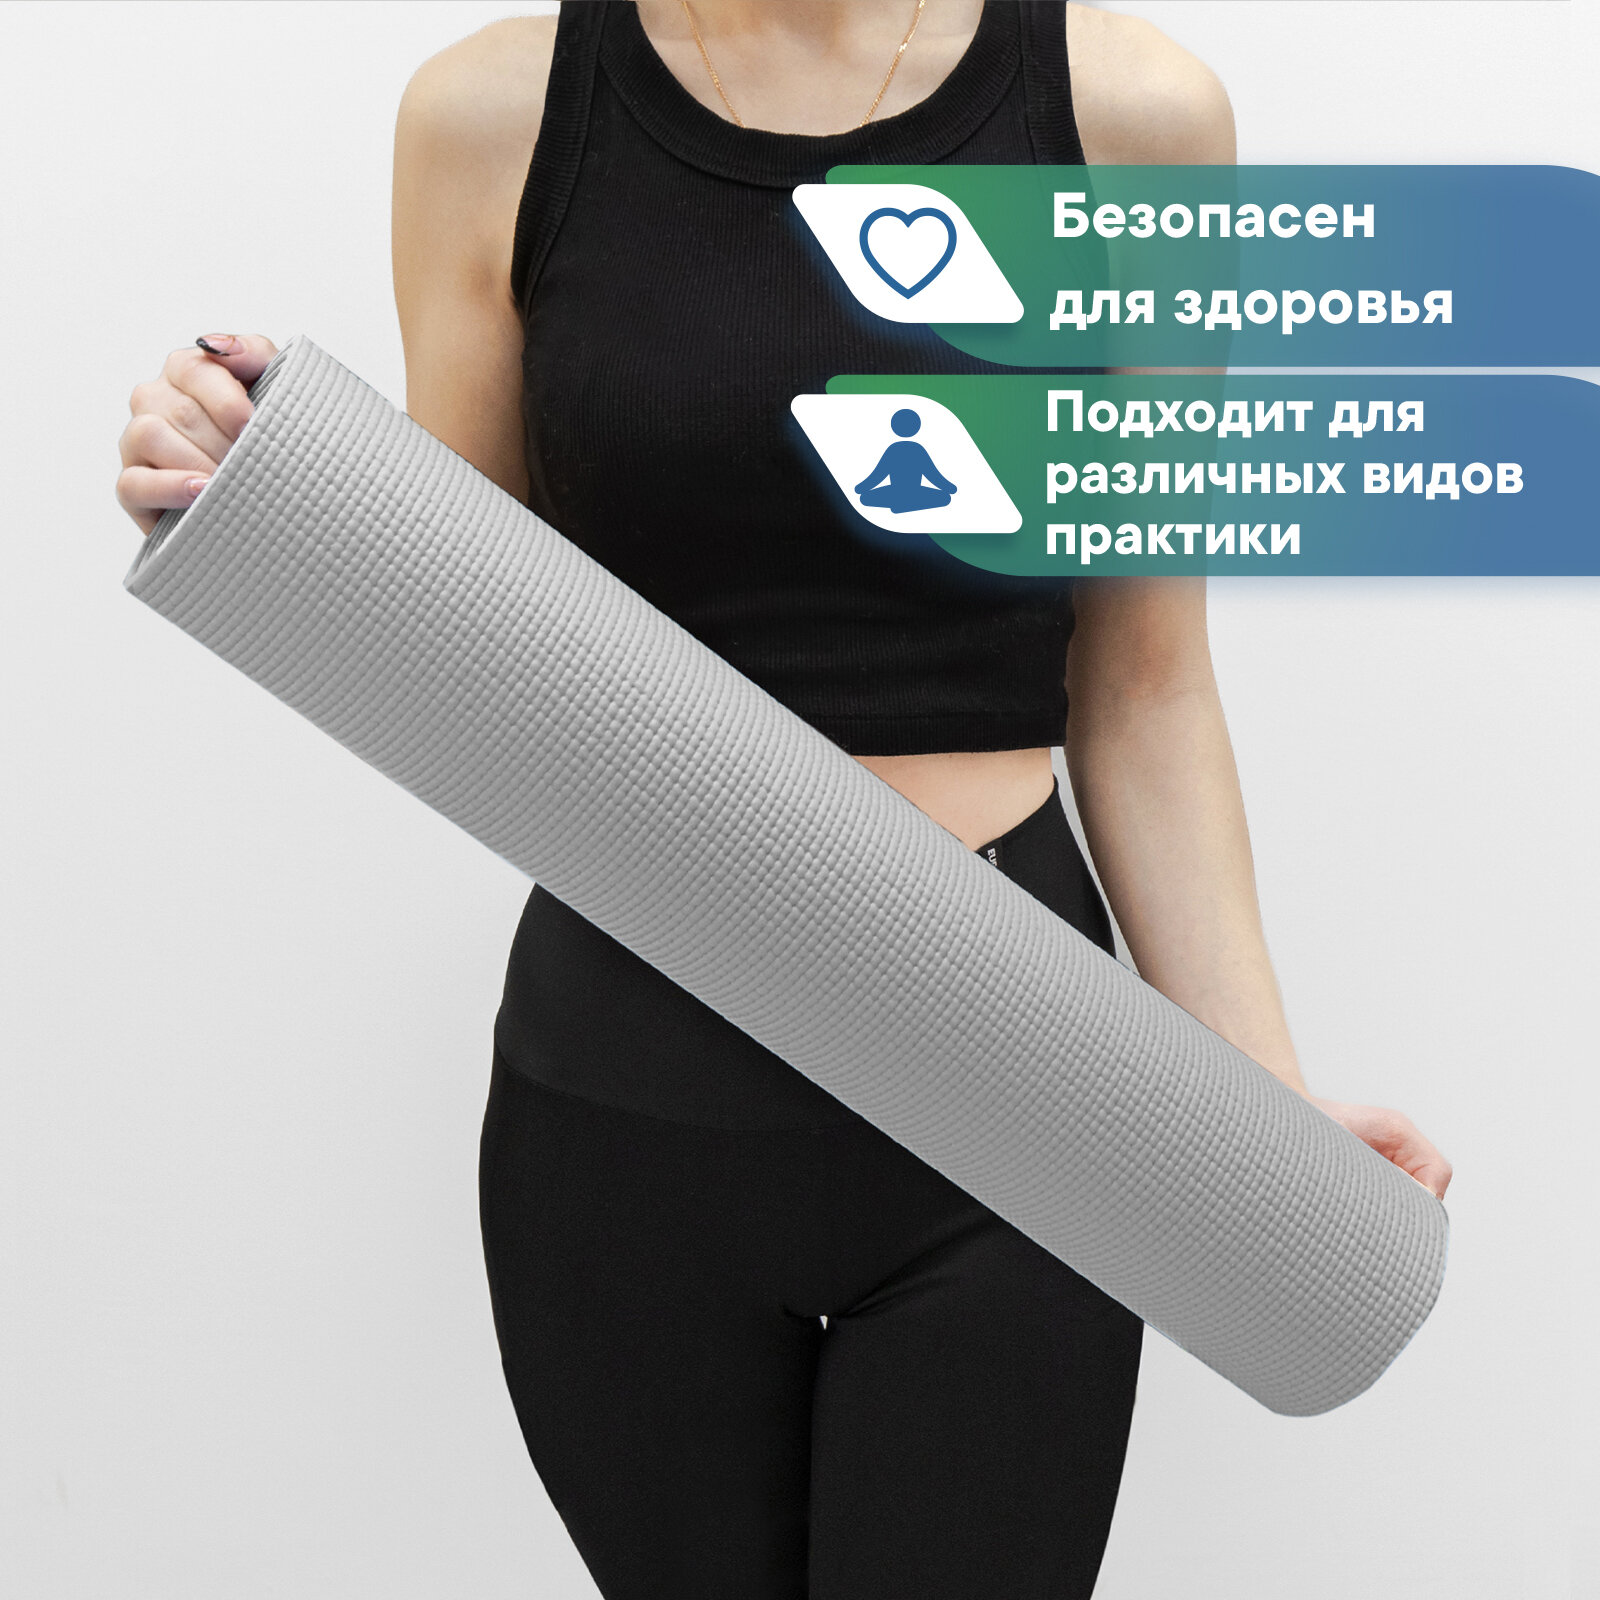 Коврик для спорта VILINA спортивный коврик для йоги и фитнеса, растяжки, гимнастики 0,5 см 61х183 см серый